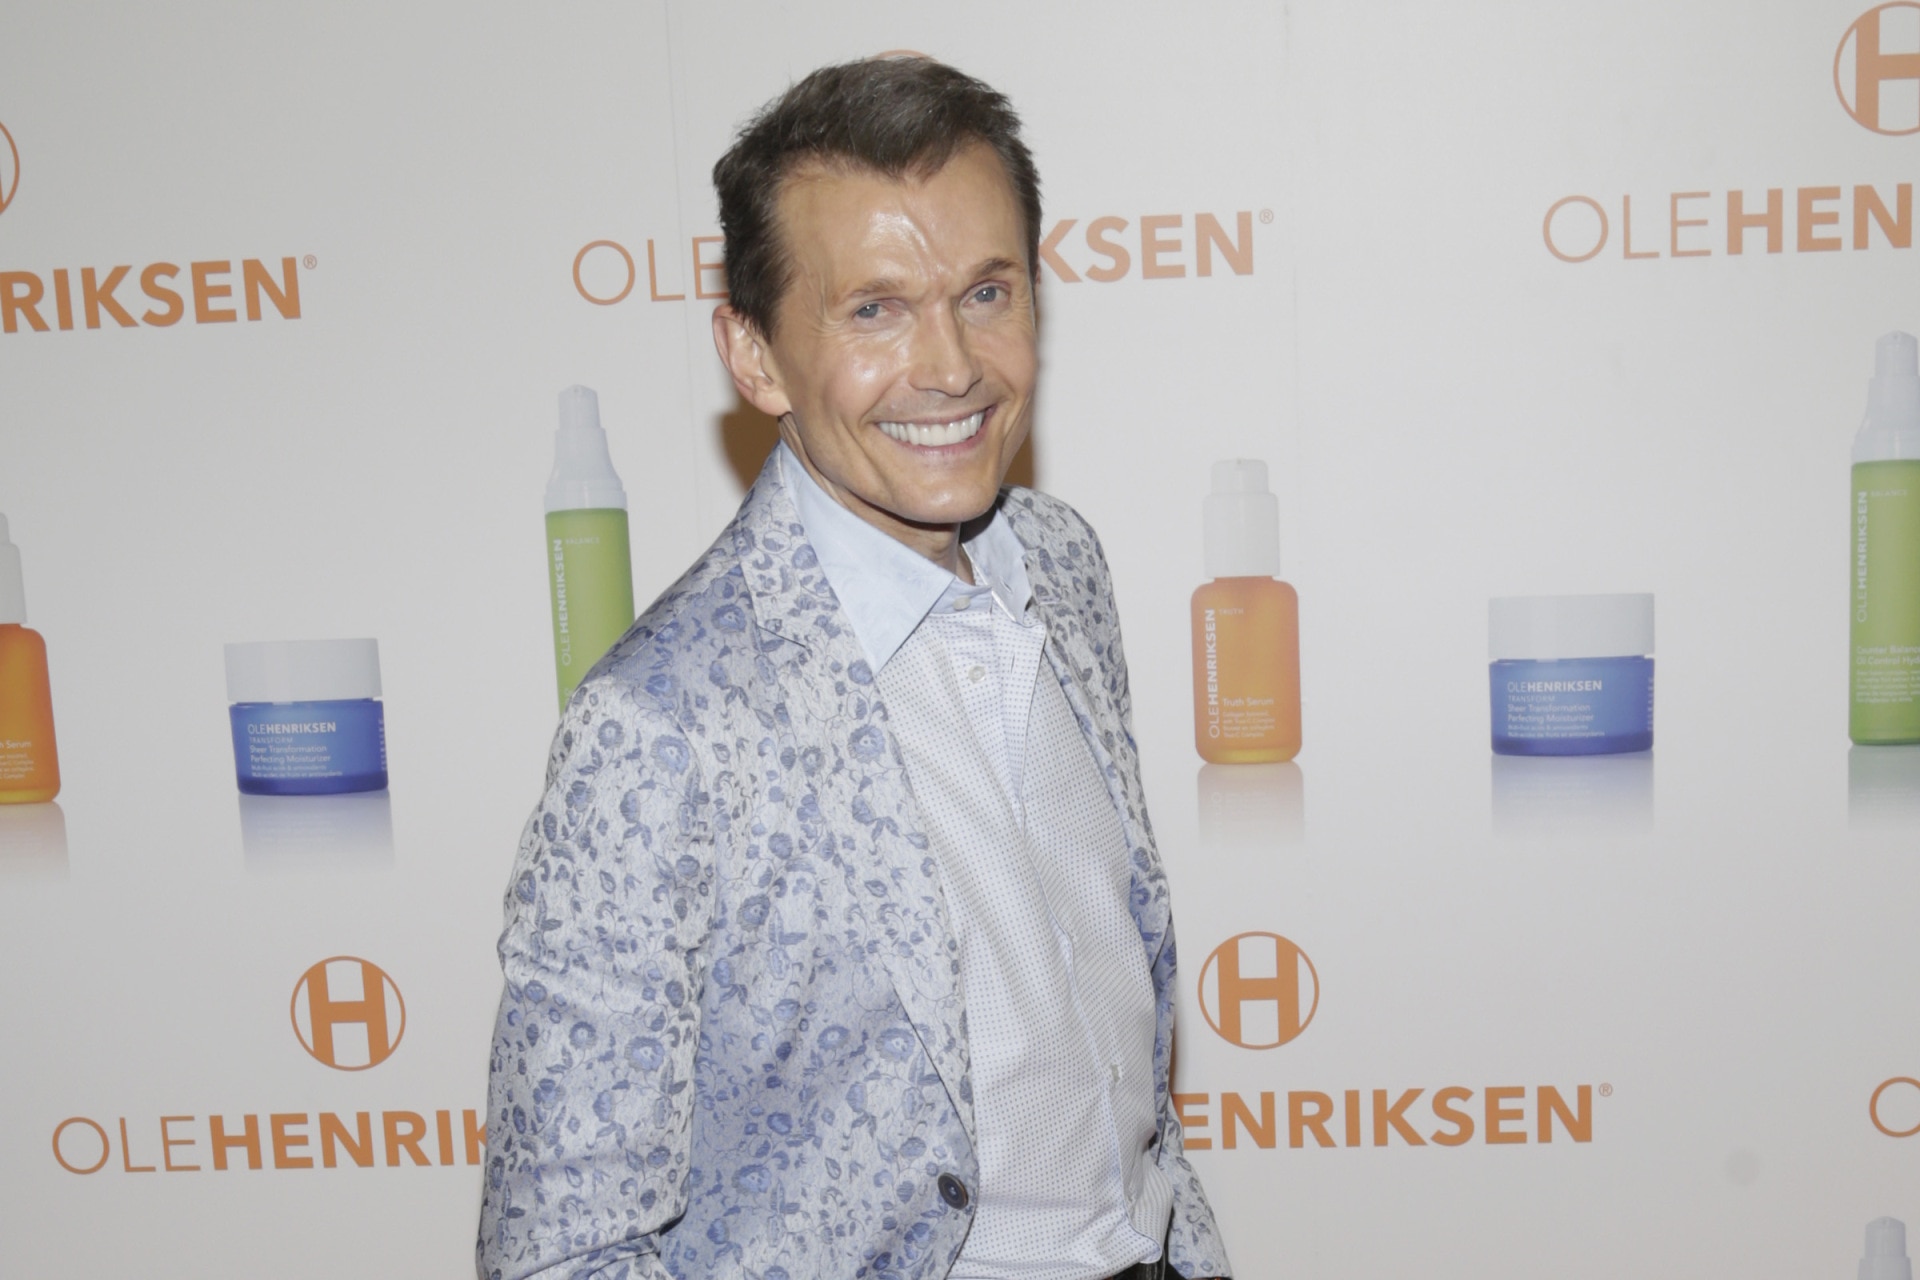 Ole Henriksen introduces BRB skin care line